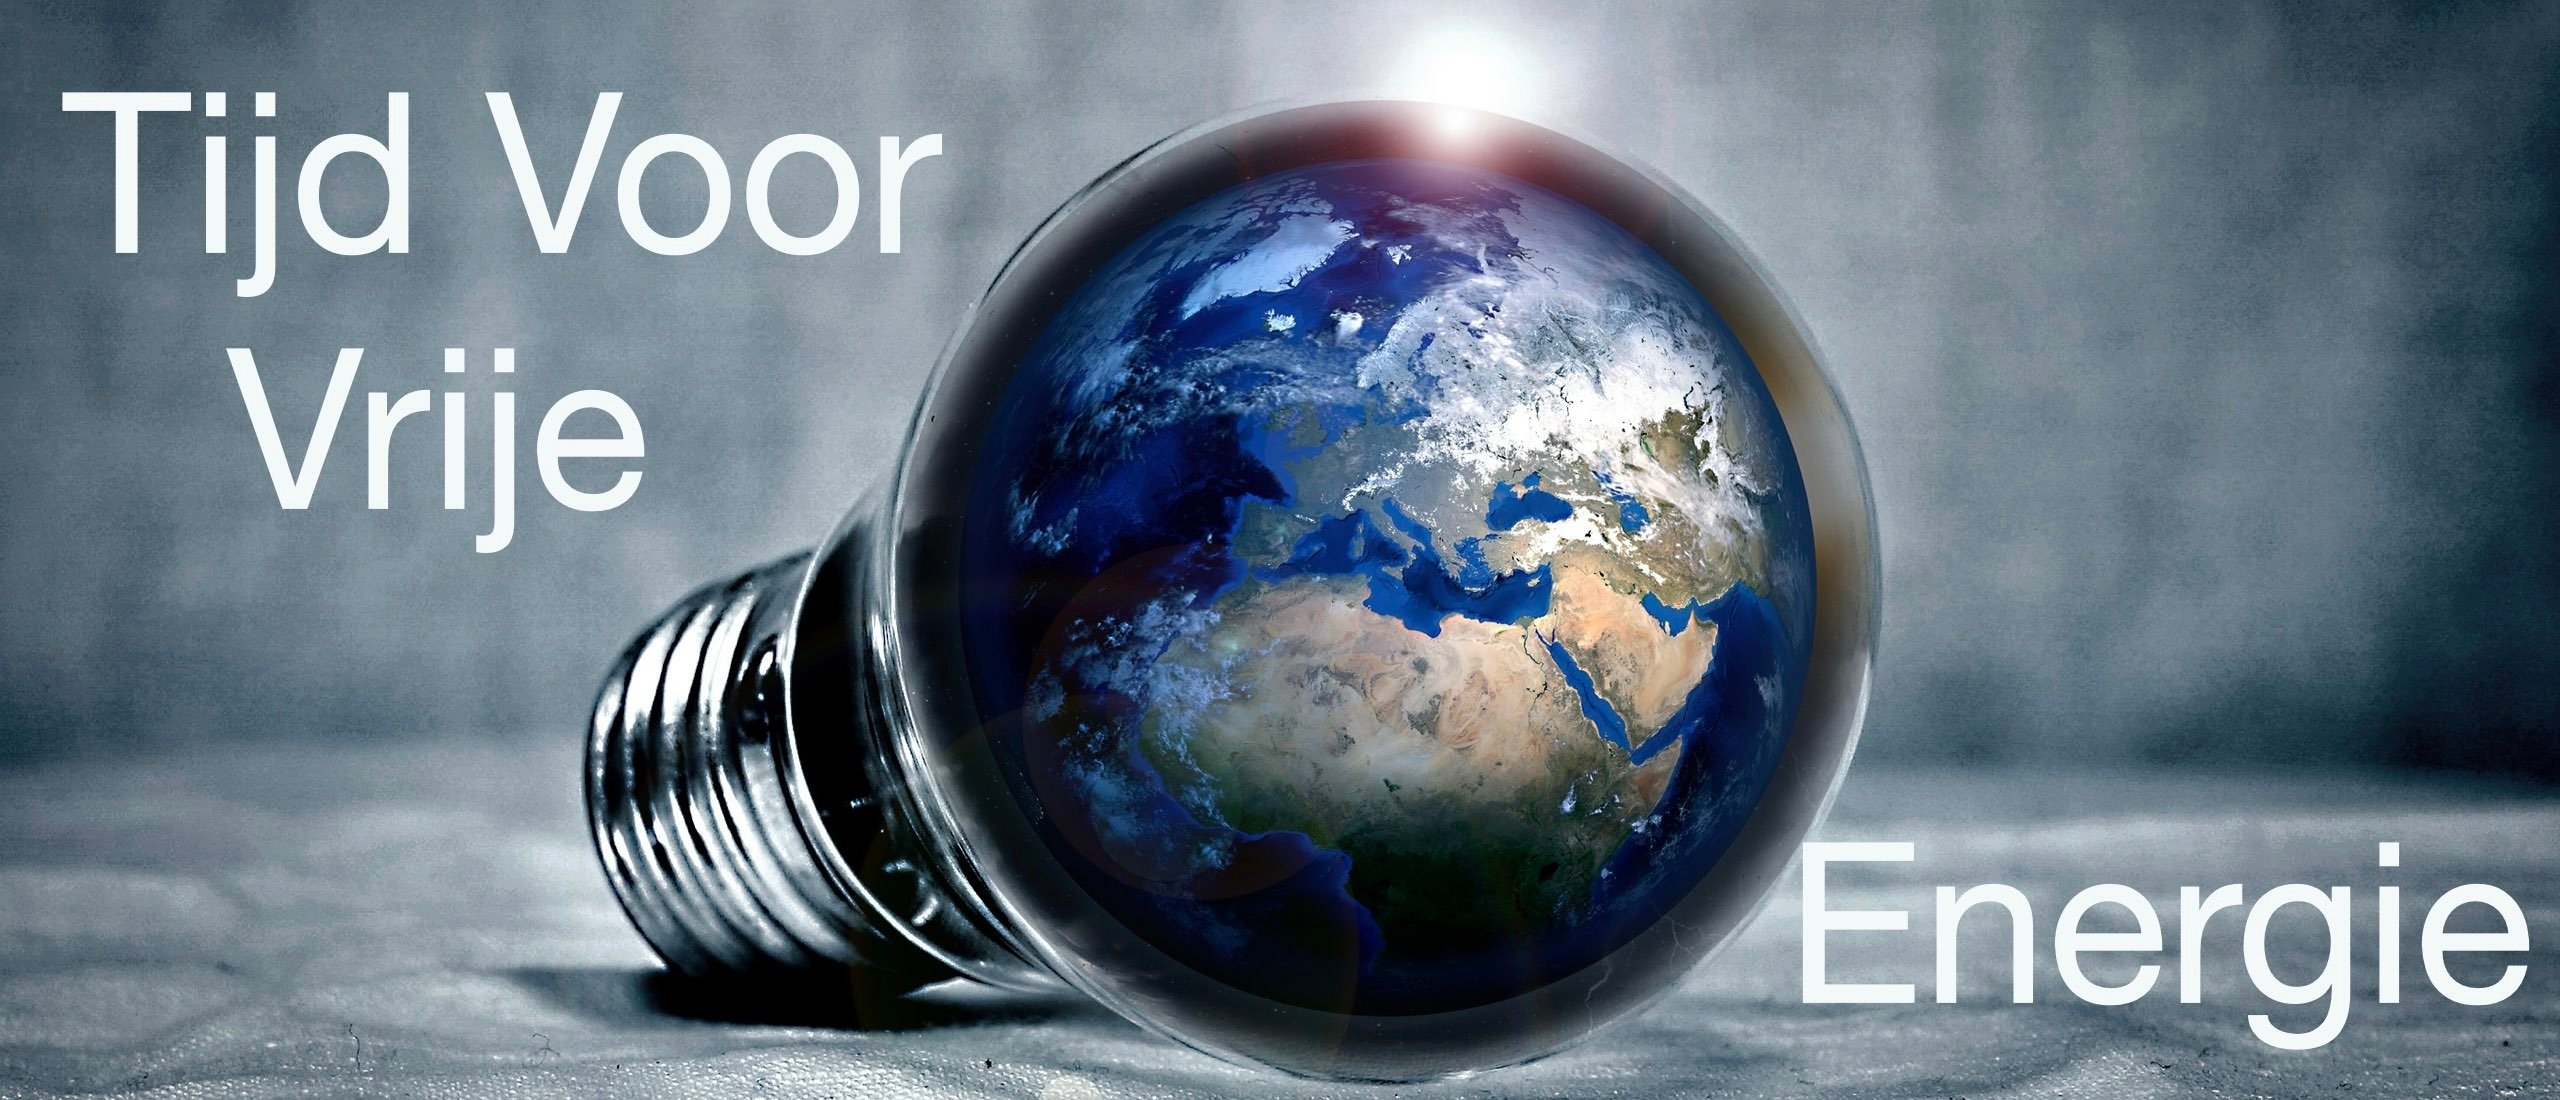 Tijd voor Vrije Energie? | Een perspectief voor een wereld in harmonie